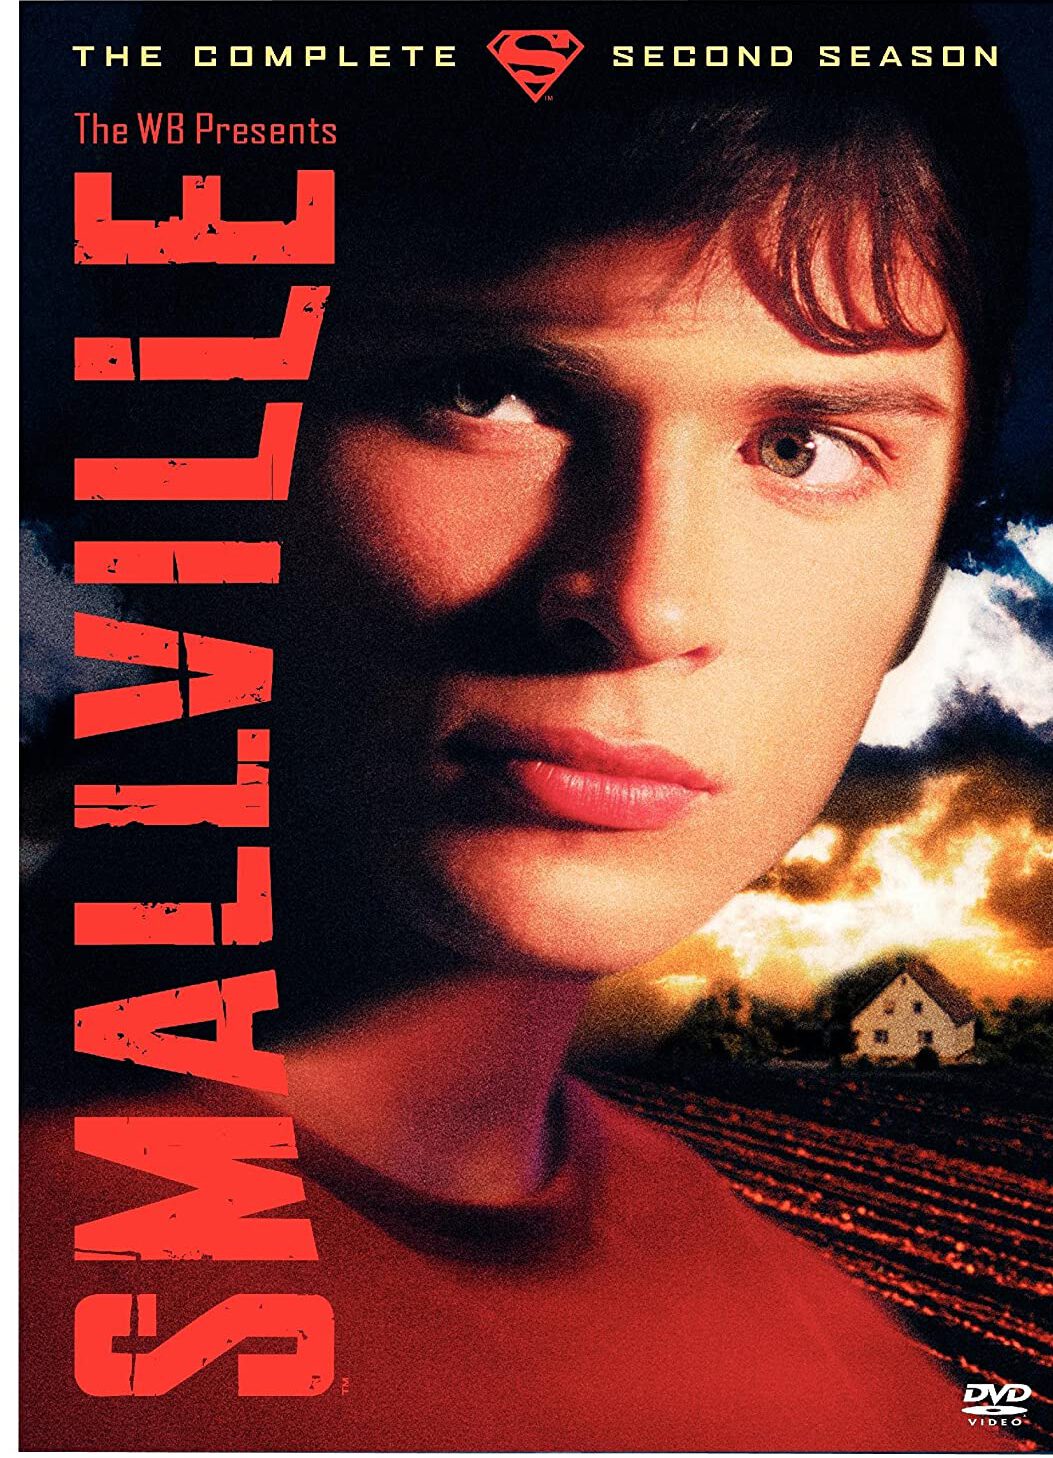 ดูหนังออนไลน์ฟรี Smallville สมอลวิลล์ หนุ่มน้อยซุปเปอร์แมน ปี 2 ตอนที่ 18